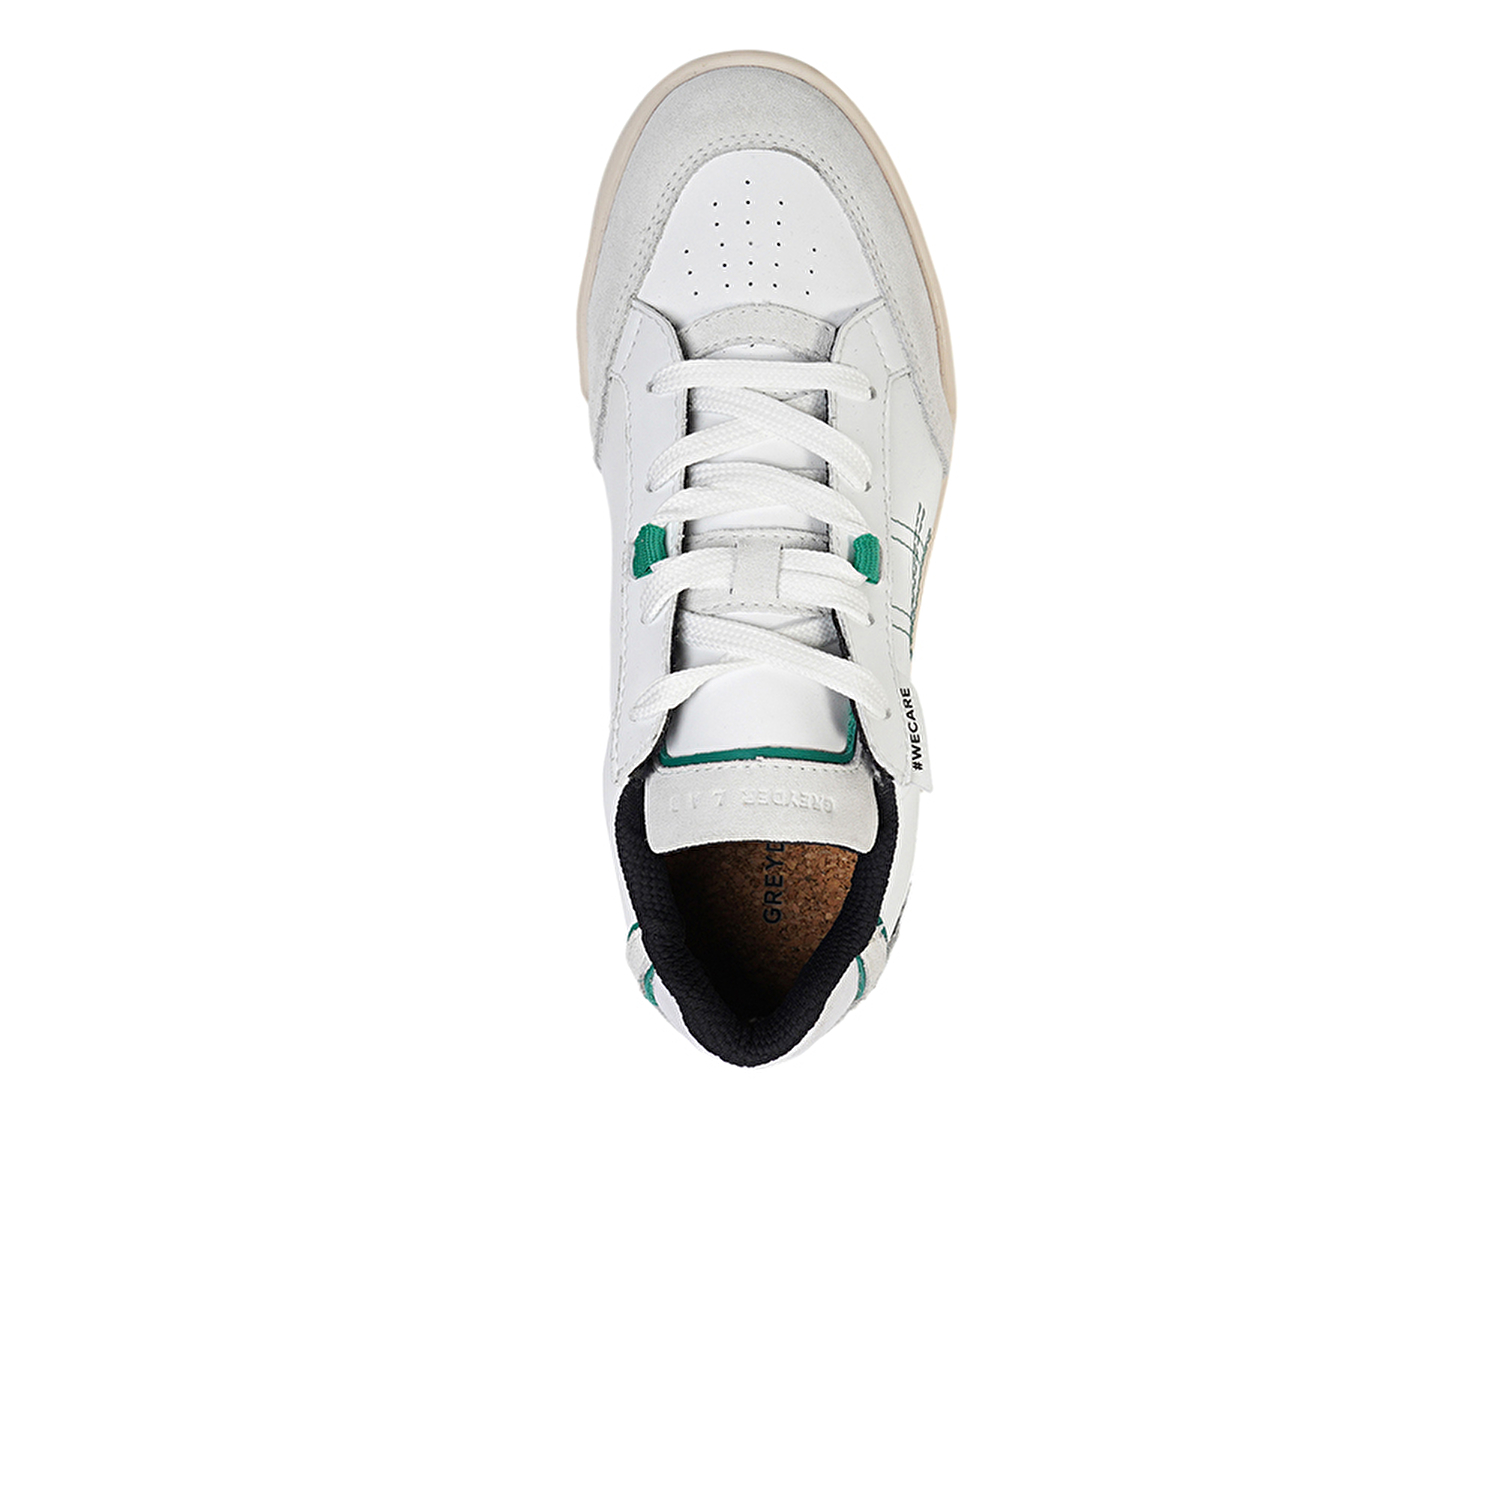 Kadın Beyaz Hakiki Deri Sneaker Ayakkabı 4Y2SA45151-3